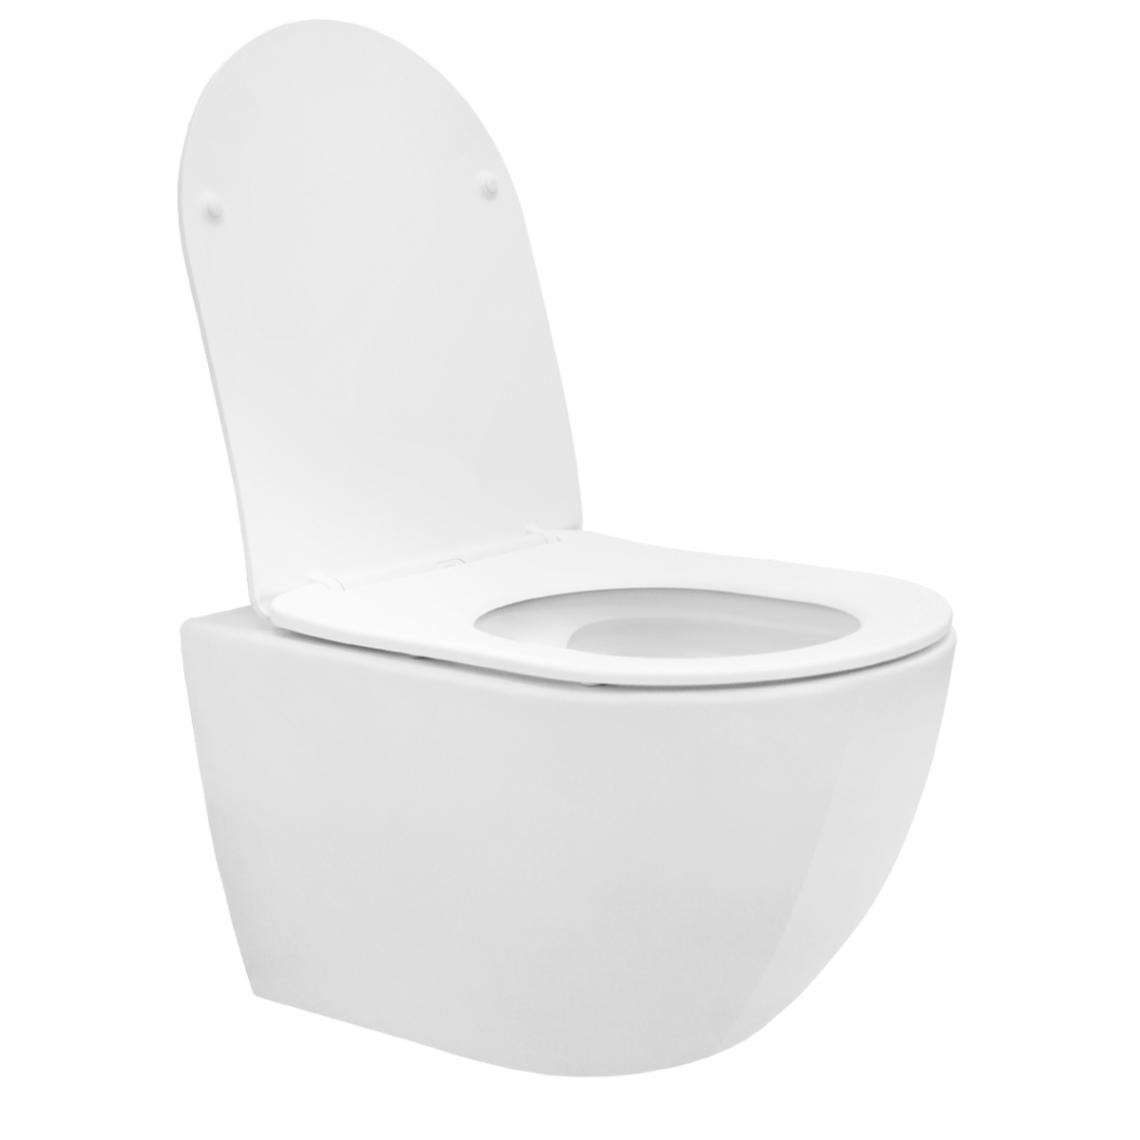 Ecd Germany - WC suspendu sans rebord long céramique blanc siège de WC Softclose salle de bain - WC